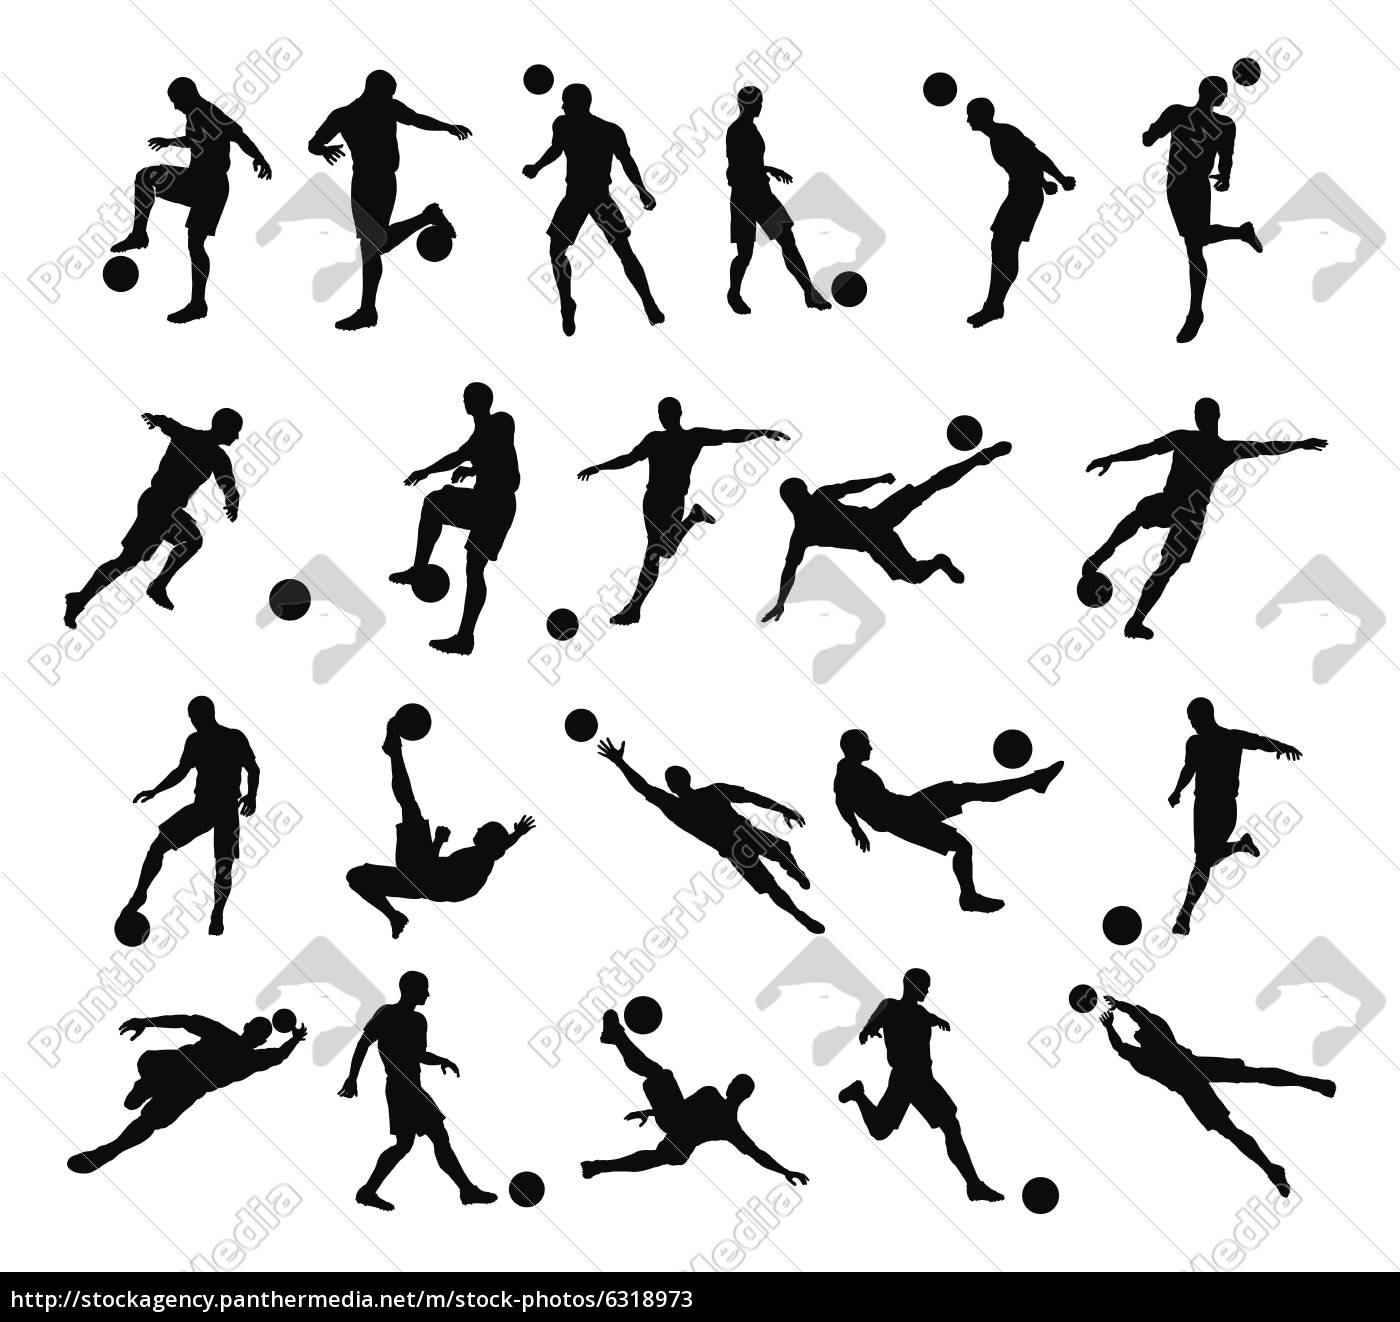 desenho de esboço, contorno de silhueta, jogador de futebol